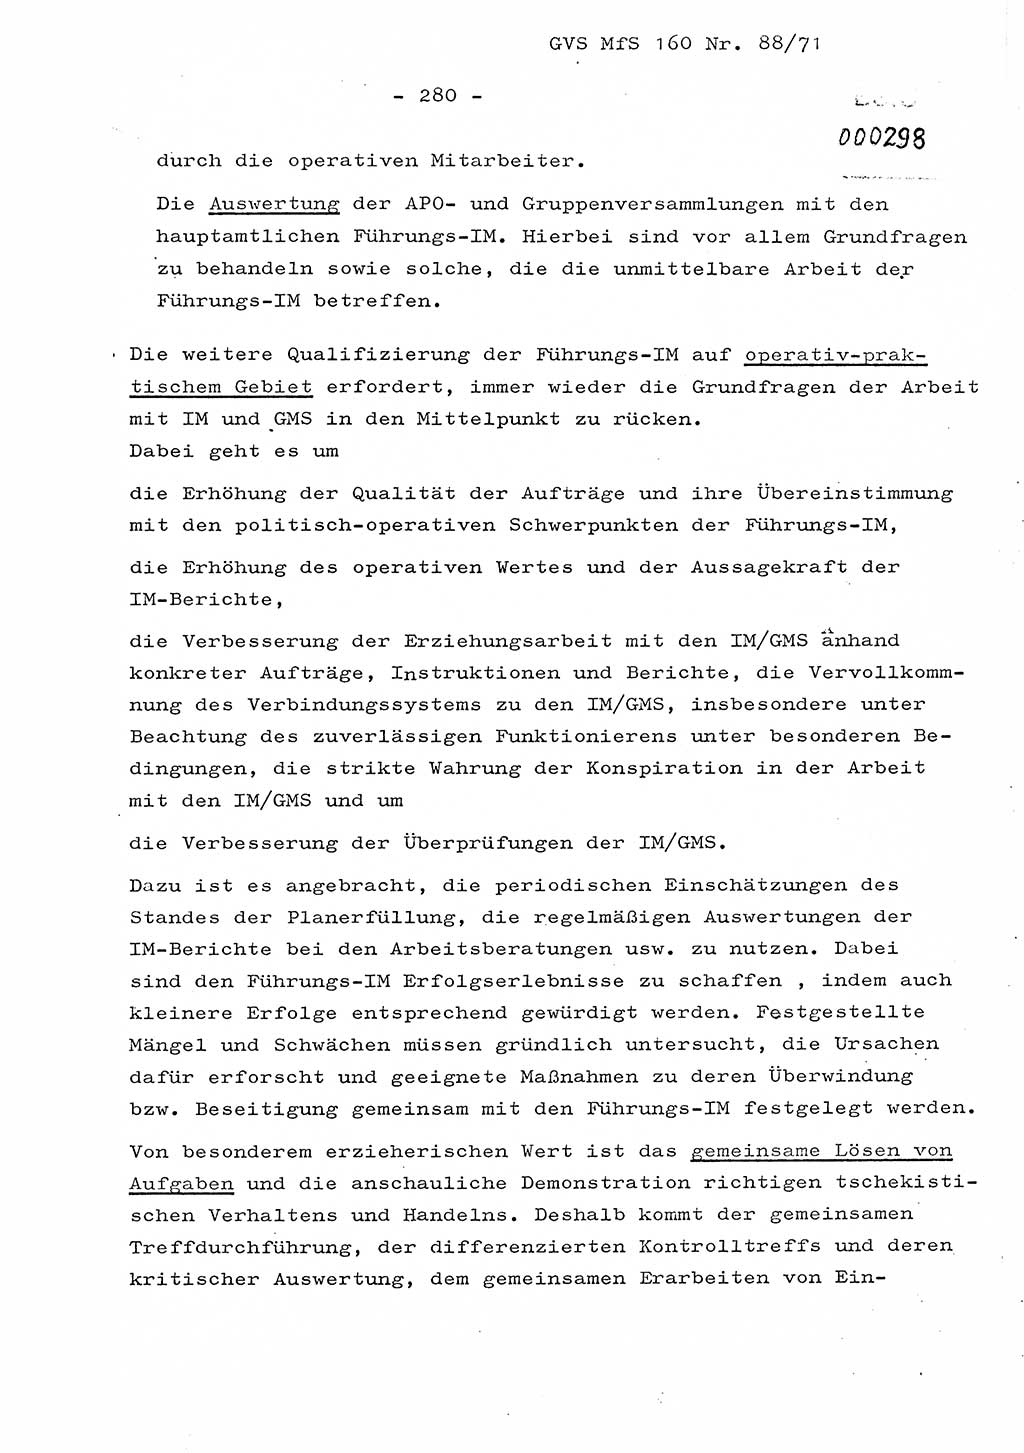 Dissertation Oberstleutnant Josef Schwarz (BV Schwerin), Major Fritz Amm (JHS), Hauptmann Peter Gräßler (JHS), Ministerium für Staatssicherheit (MfS) [Deutsche Demokratische Republik (DDR)], Juristische Hochschule (JHS), Geheime Verschlußsache (GVS) 160-88/71, Potsdam 1972, Seite 280 (Diss. MfS DDR JHS GVS 160-88/71 1972, S. 280)